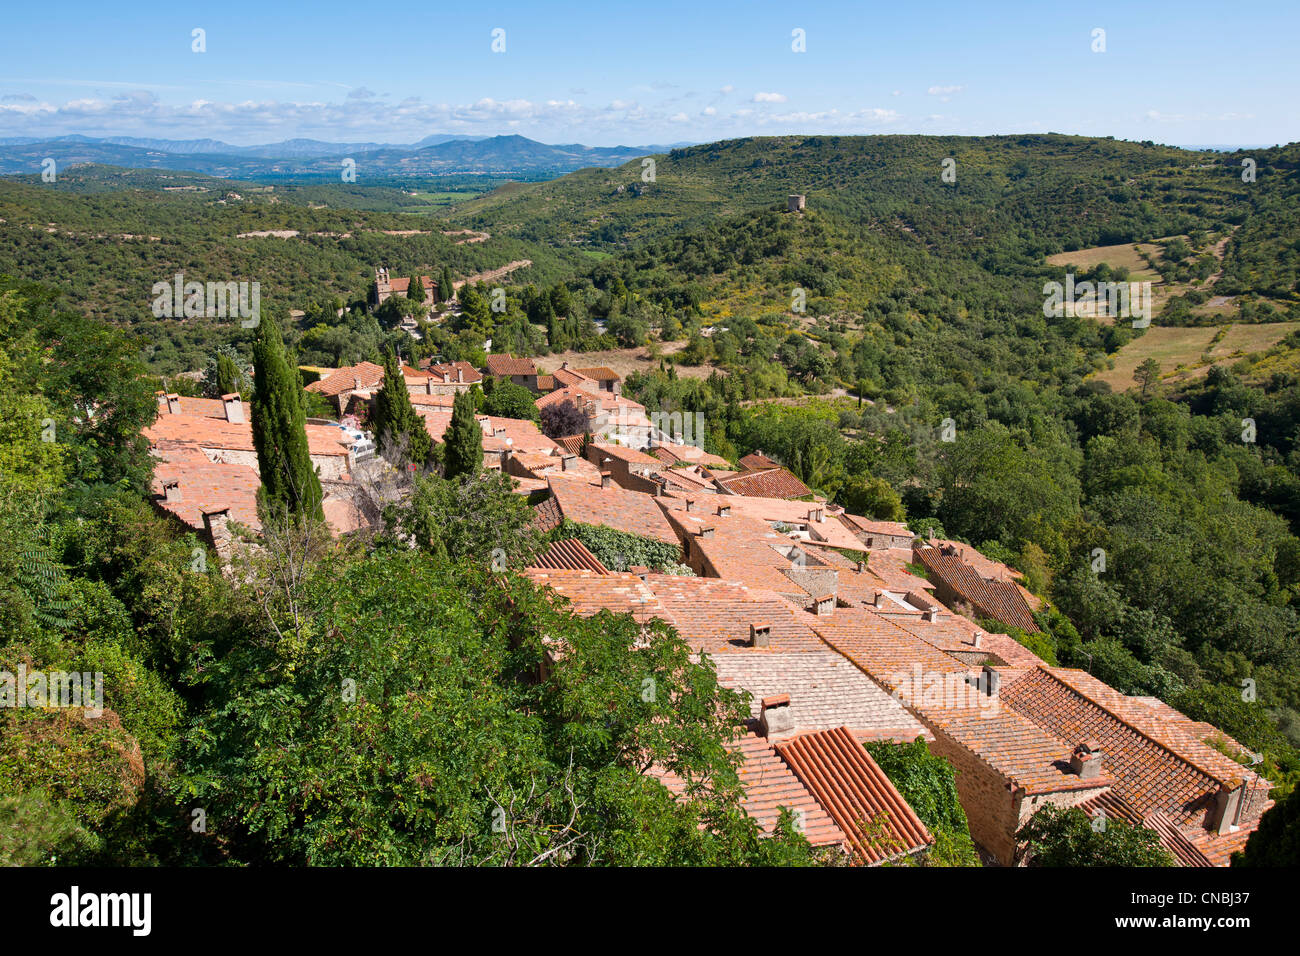 France, Pyrenees Orientales, Castelnou, labelled Les Plus Beaux Villages de France (The Most Beautiful Villages of France), the Stock Photo